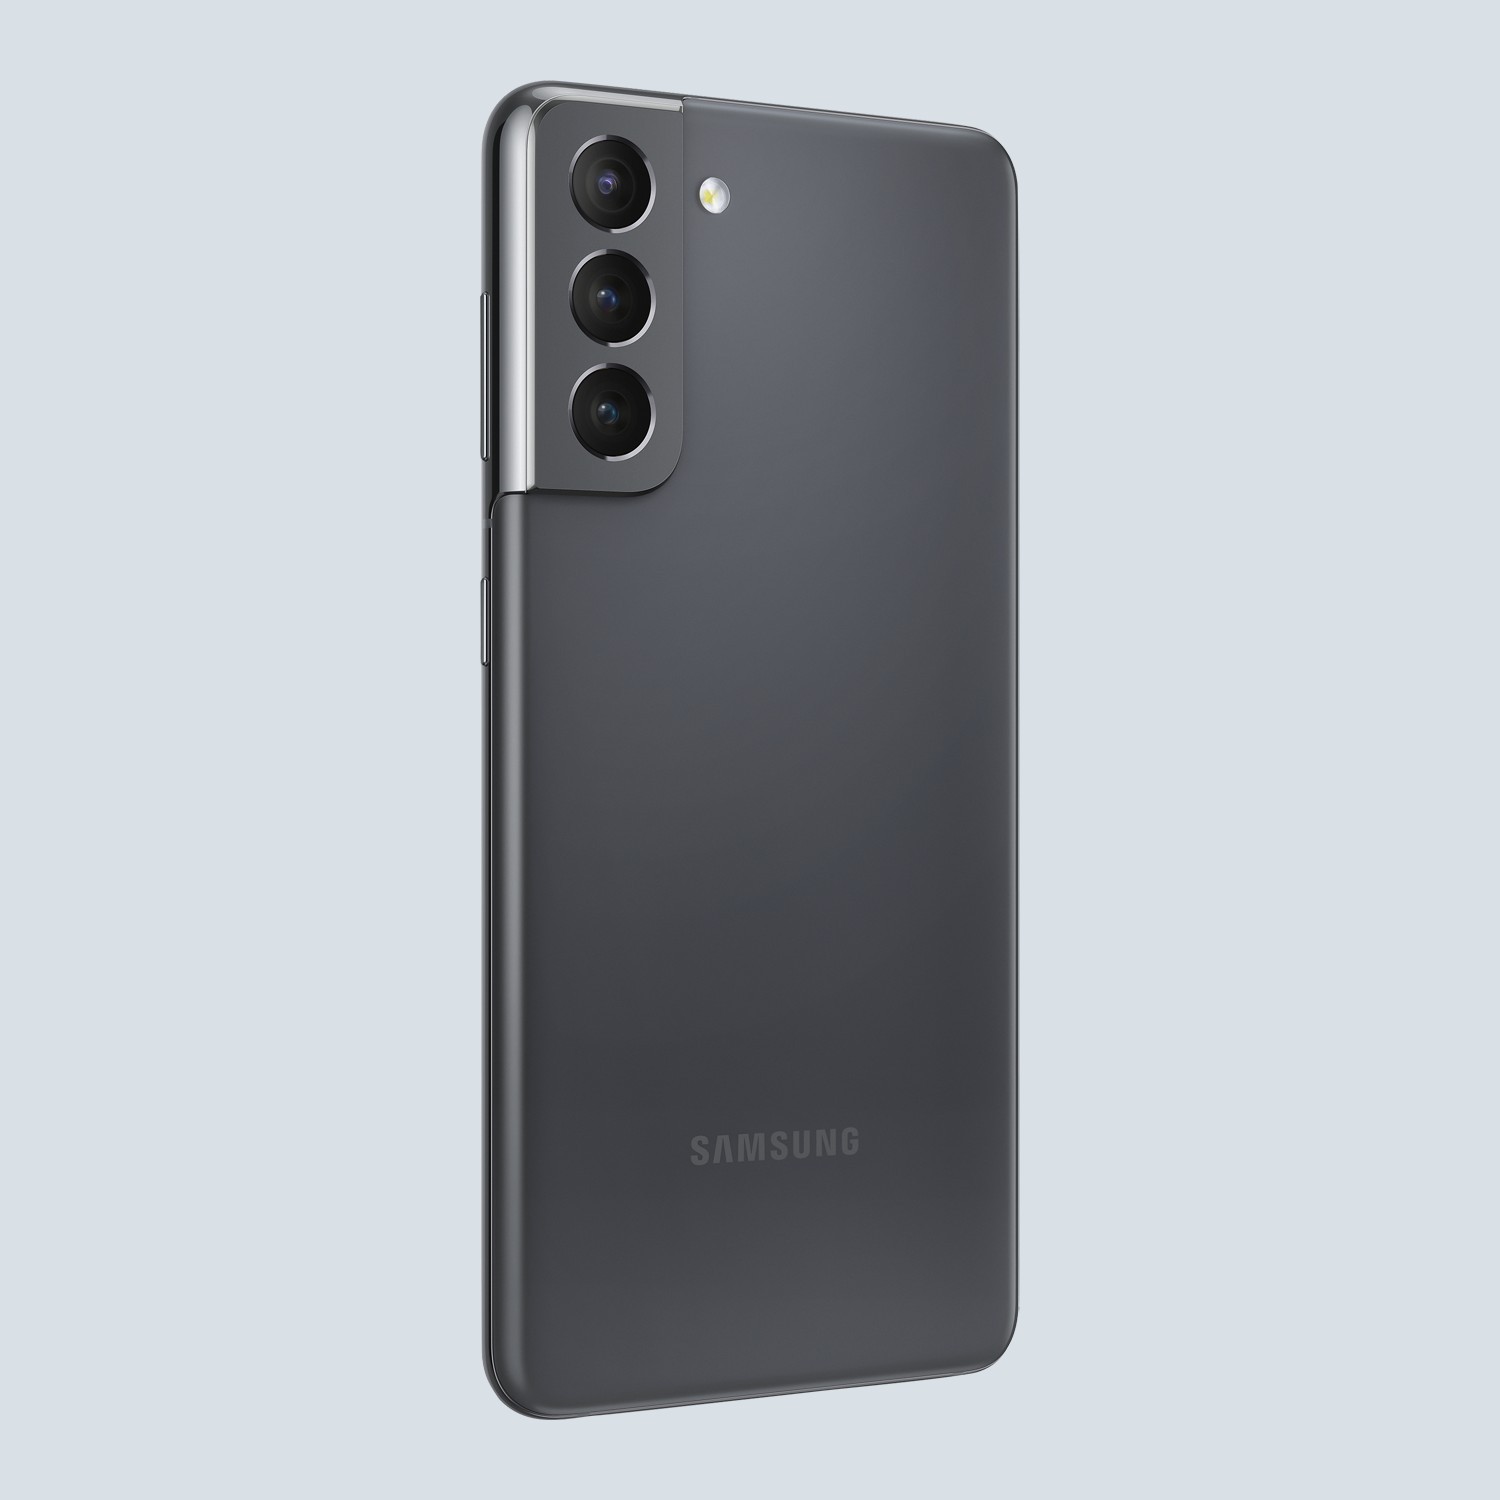 گوشی موبایل سامسونگ Samsung Galaxy S21 FE 5G با 256 گیگ حافظه داخلی و رم 8 گیگابایت